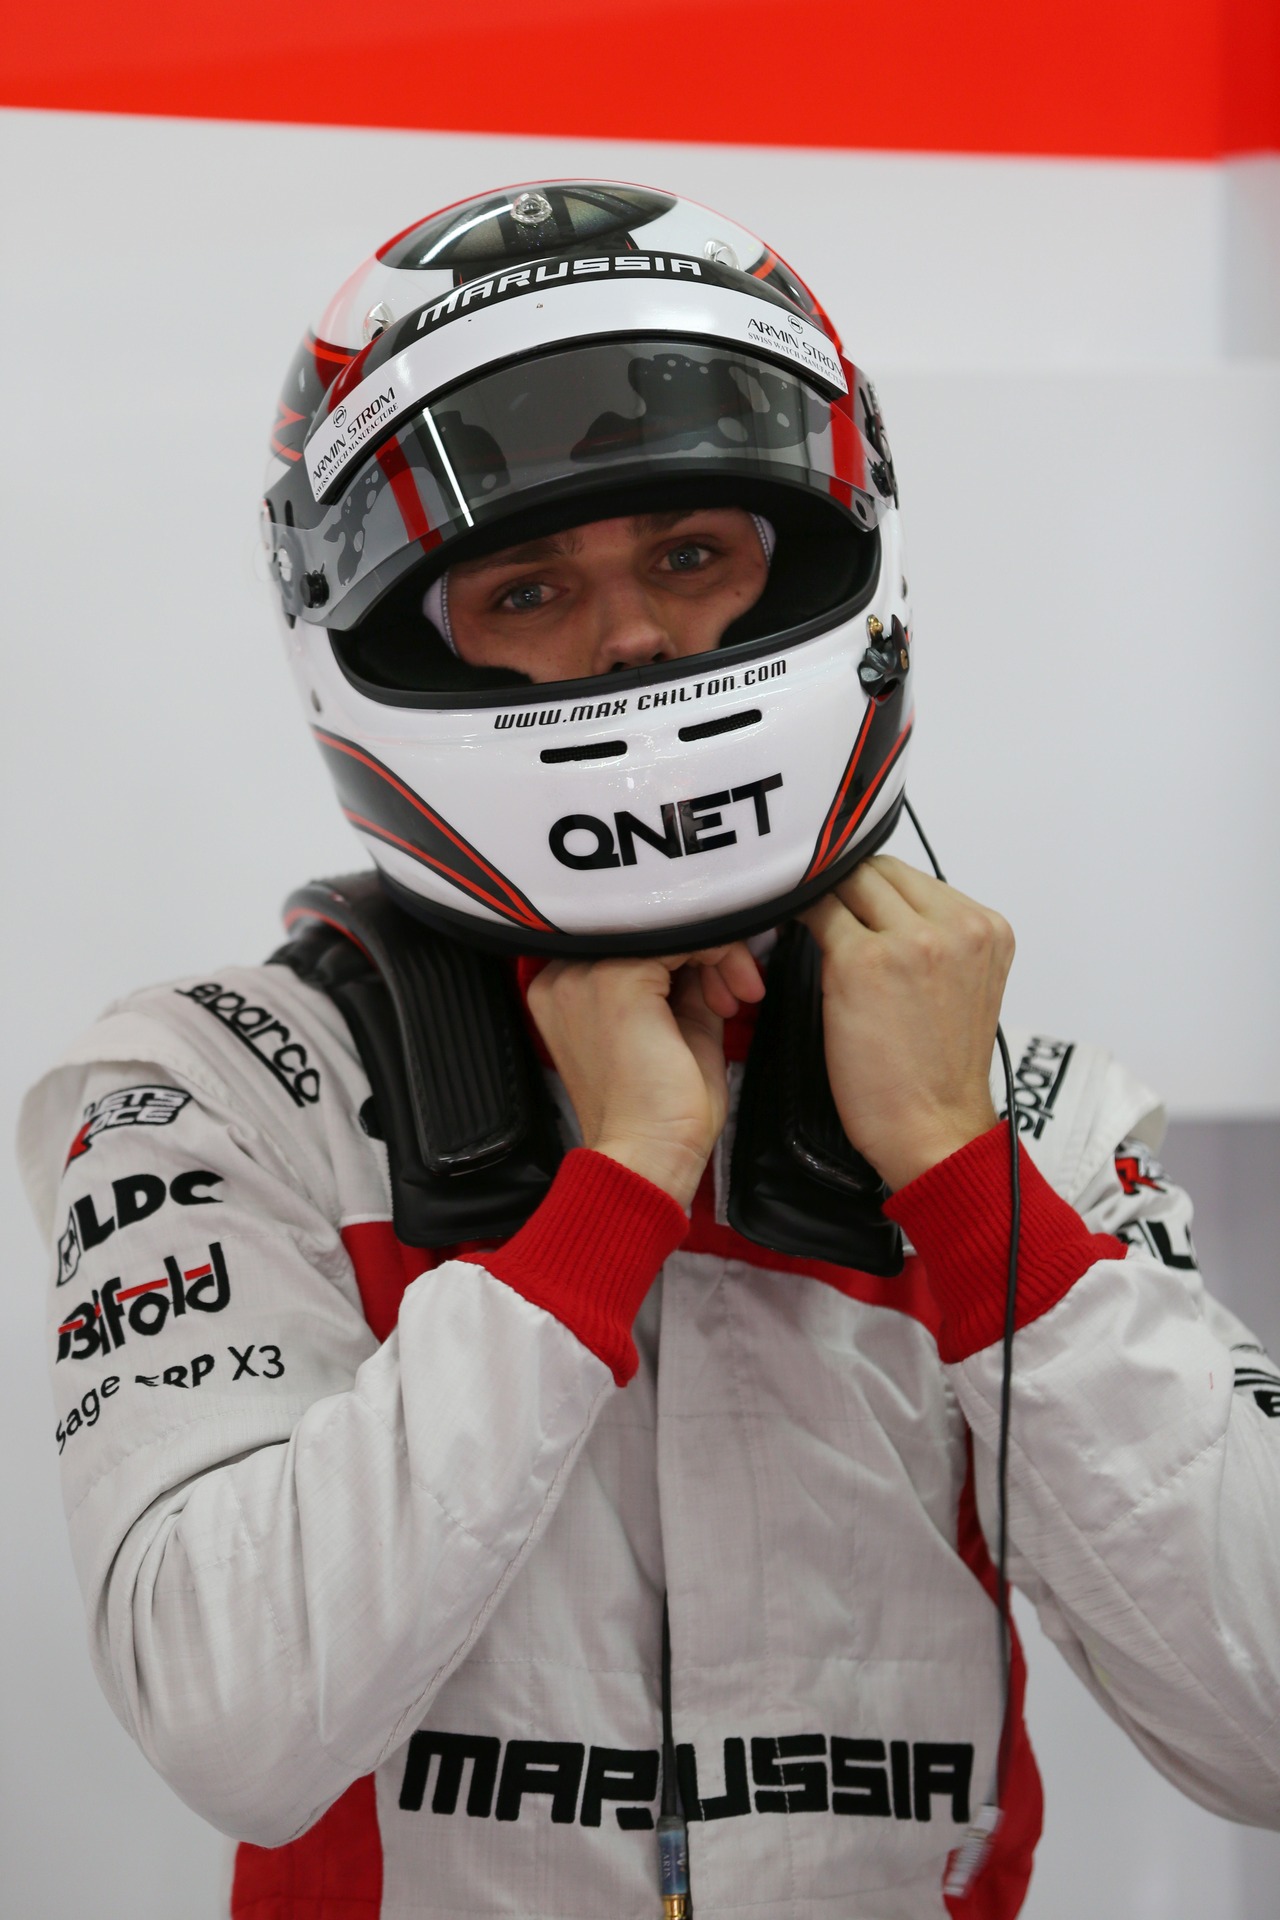 Max Chilton (GBR) Marussia F1 Team.
21.02.2013. 